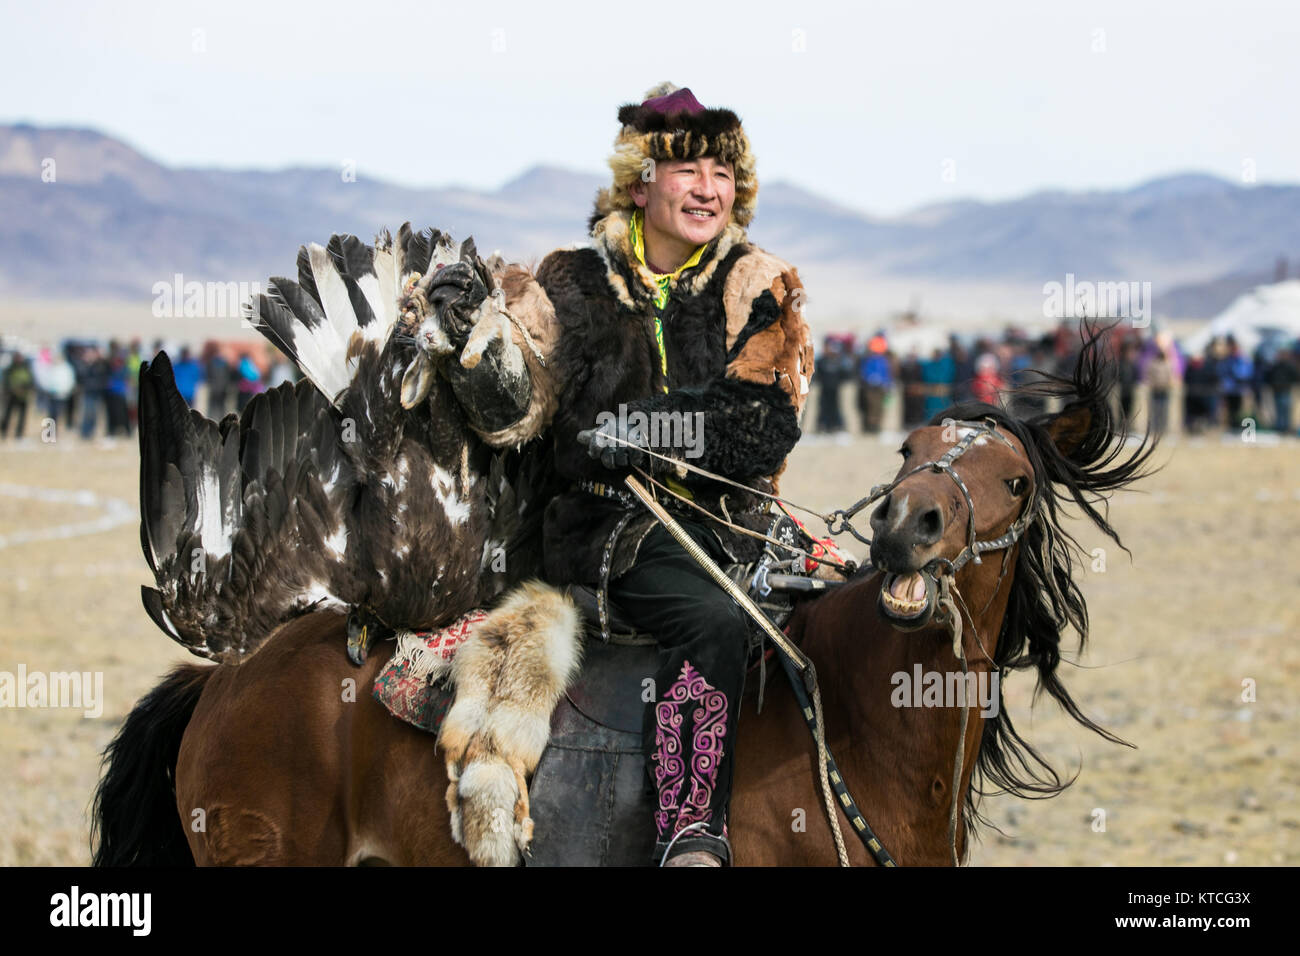 Kazakh eagle hunter on horseback during Golden Eagle Festival in Mongolia Stock Photo